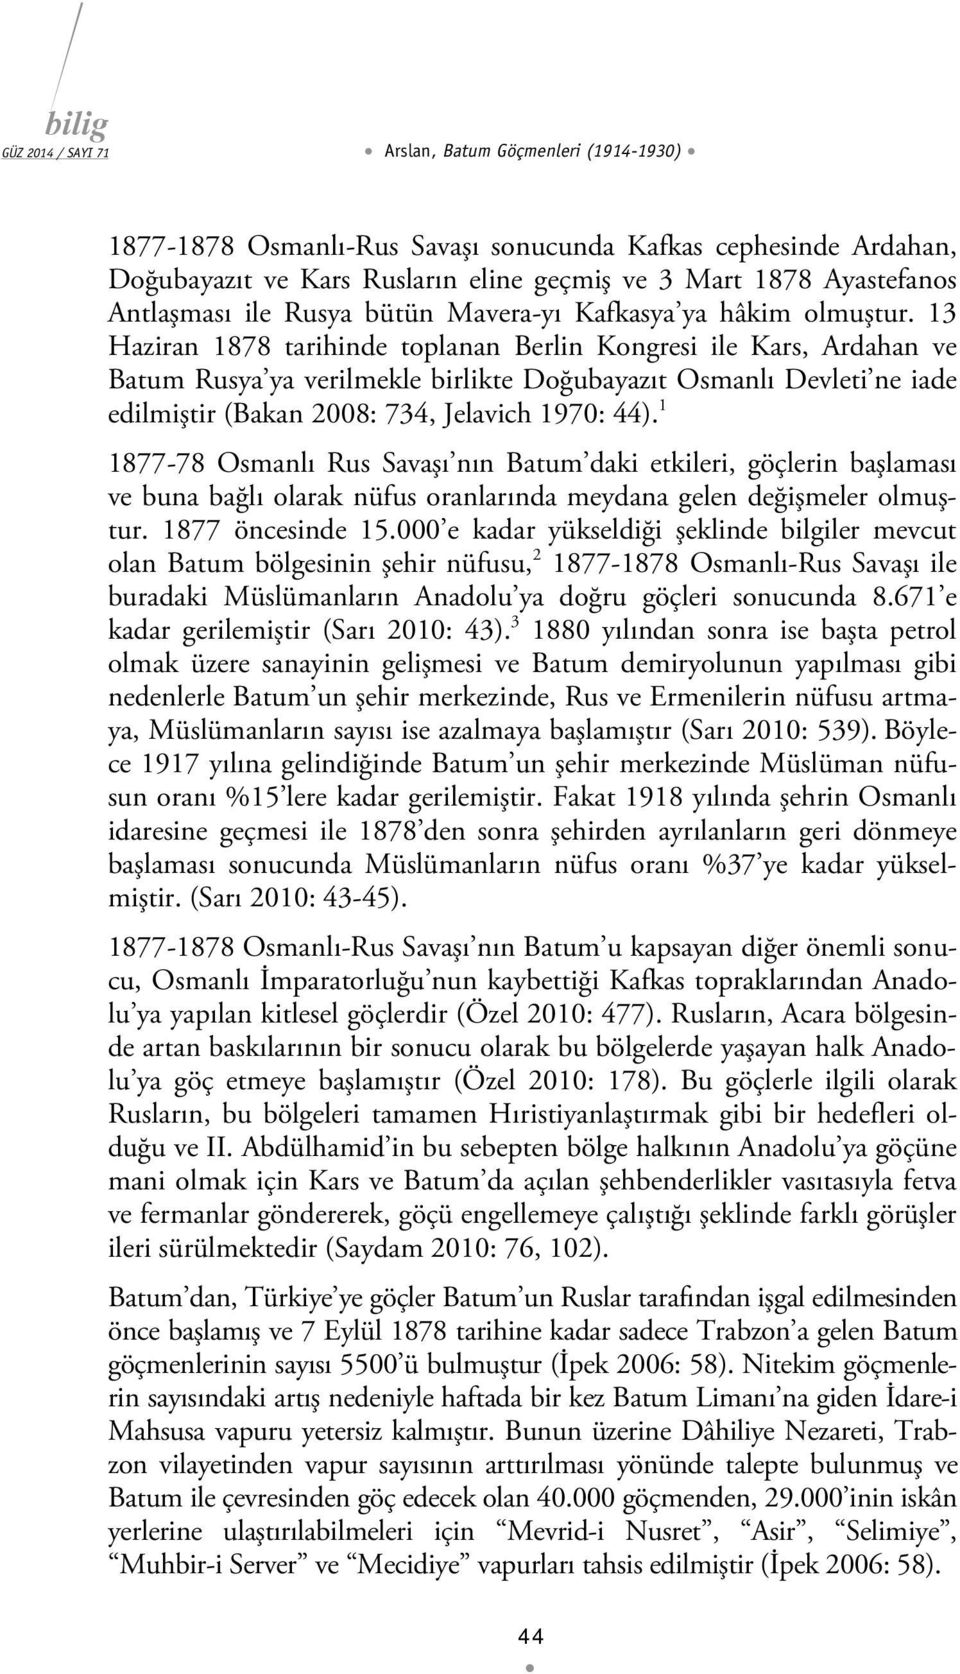 13 Haziran 1878 tarihinde toplanan Berlin Kongresi ile Kars, Ardahan ve Batum Rusya ya verilmekle birlikte Doğubayazıt Osmanlı Devleti ne iade edilmiştir (Bakan 2008: 734, Jelavich 1970: 44).